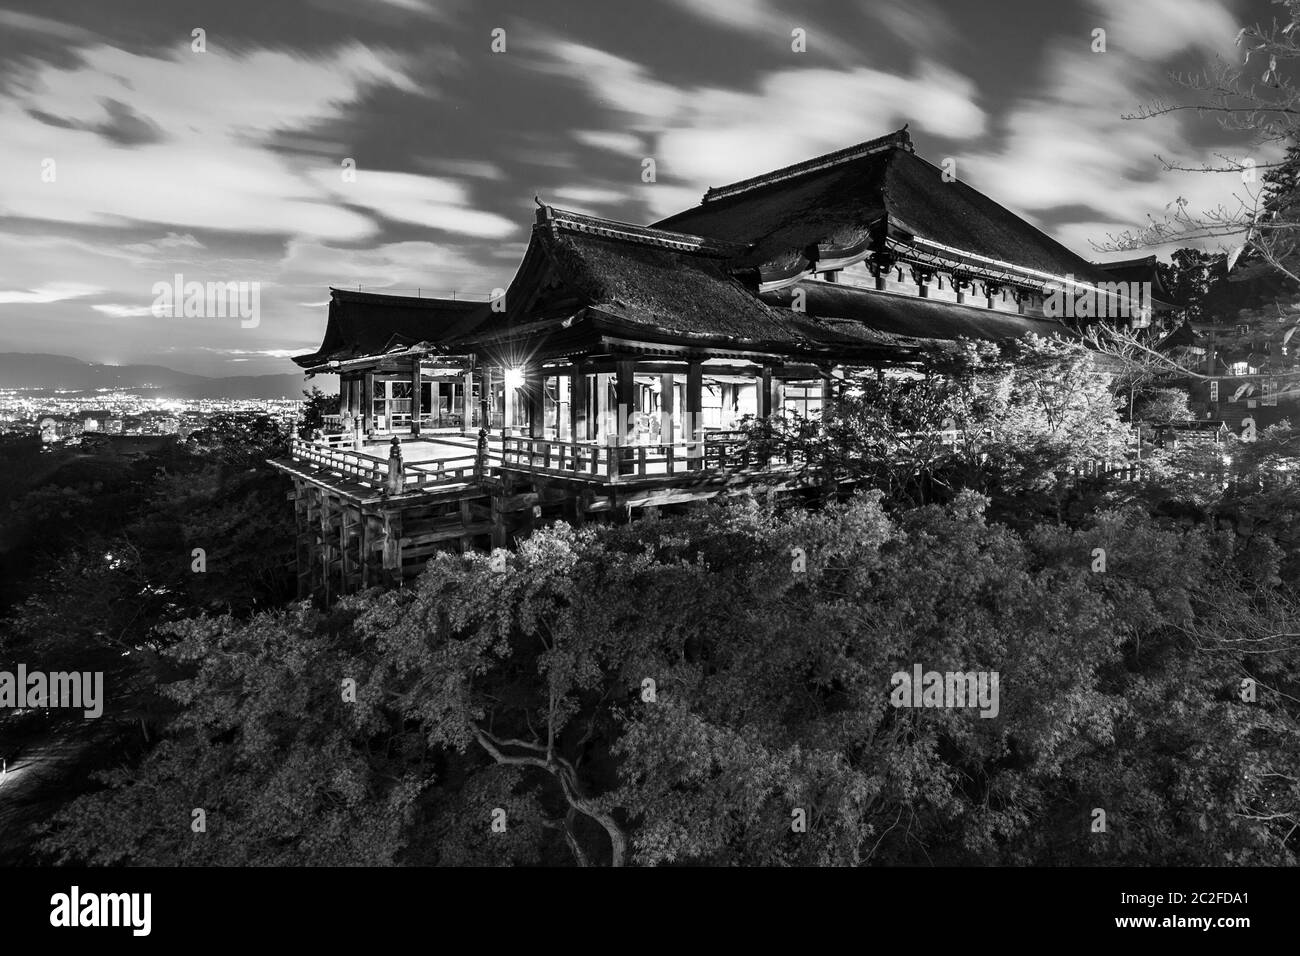 Photo nocturne noire et blanche du temple Kiyomizu-dera à Kyoto, Japon. Banque D'Images